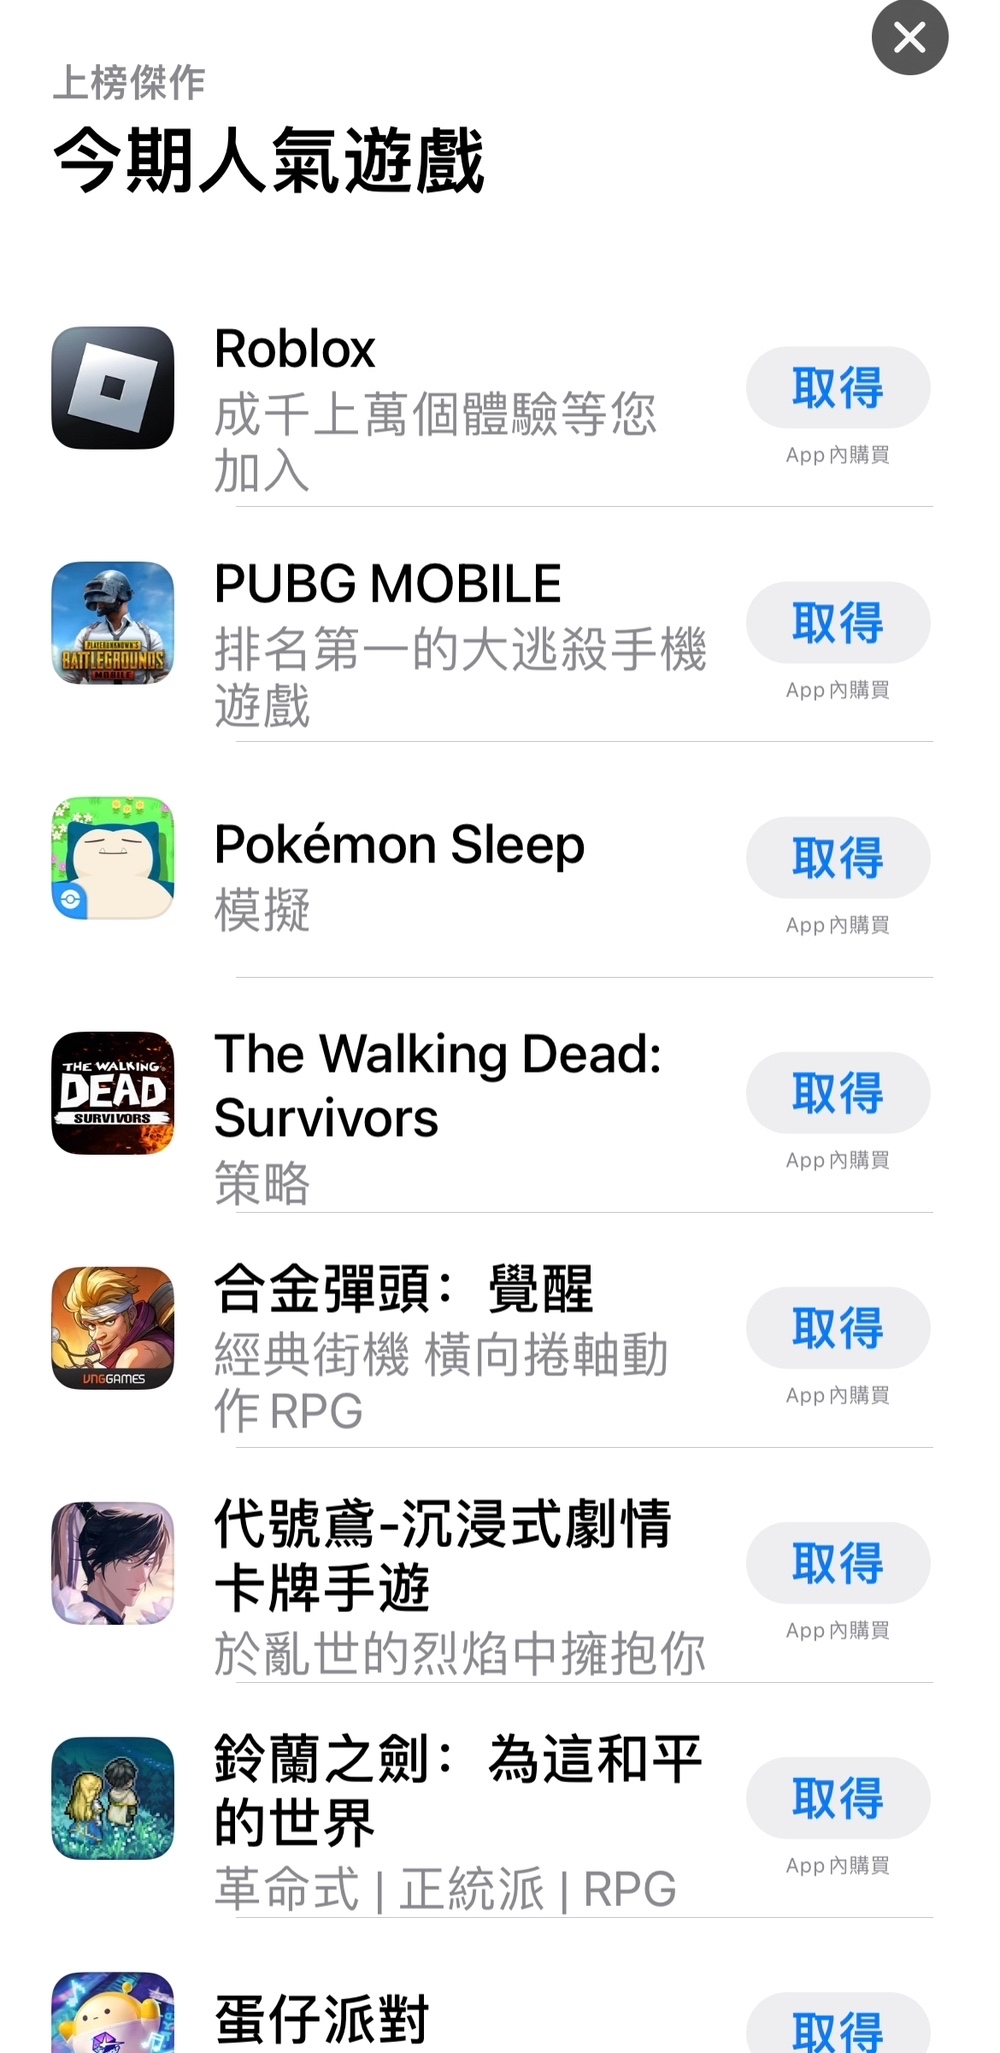 香港人玩的手机游戏的确上头